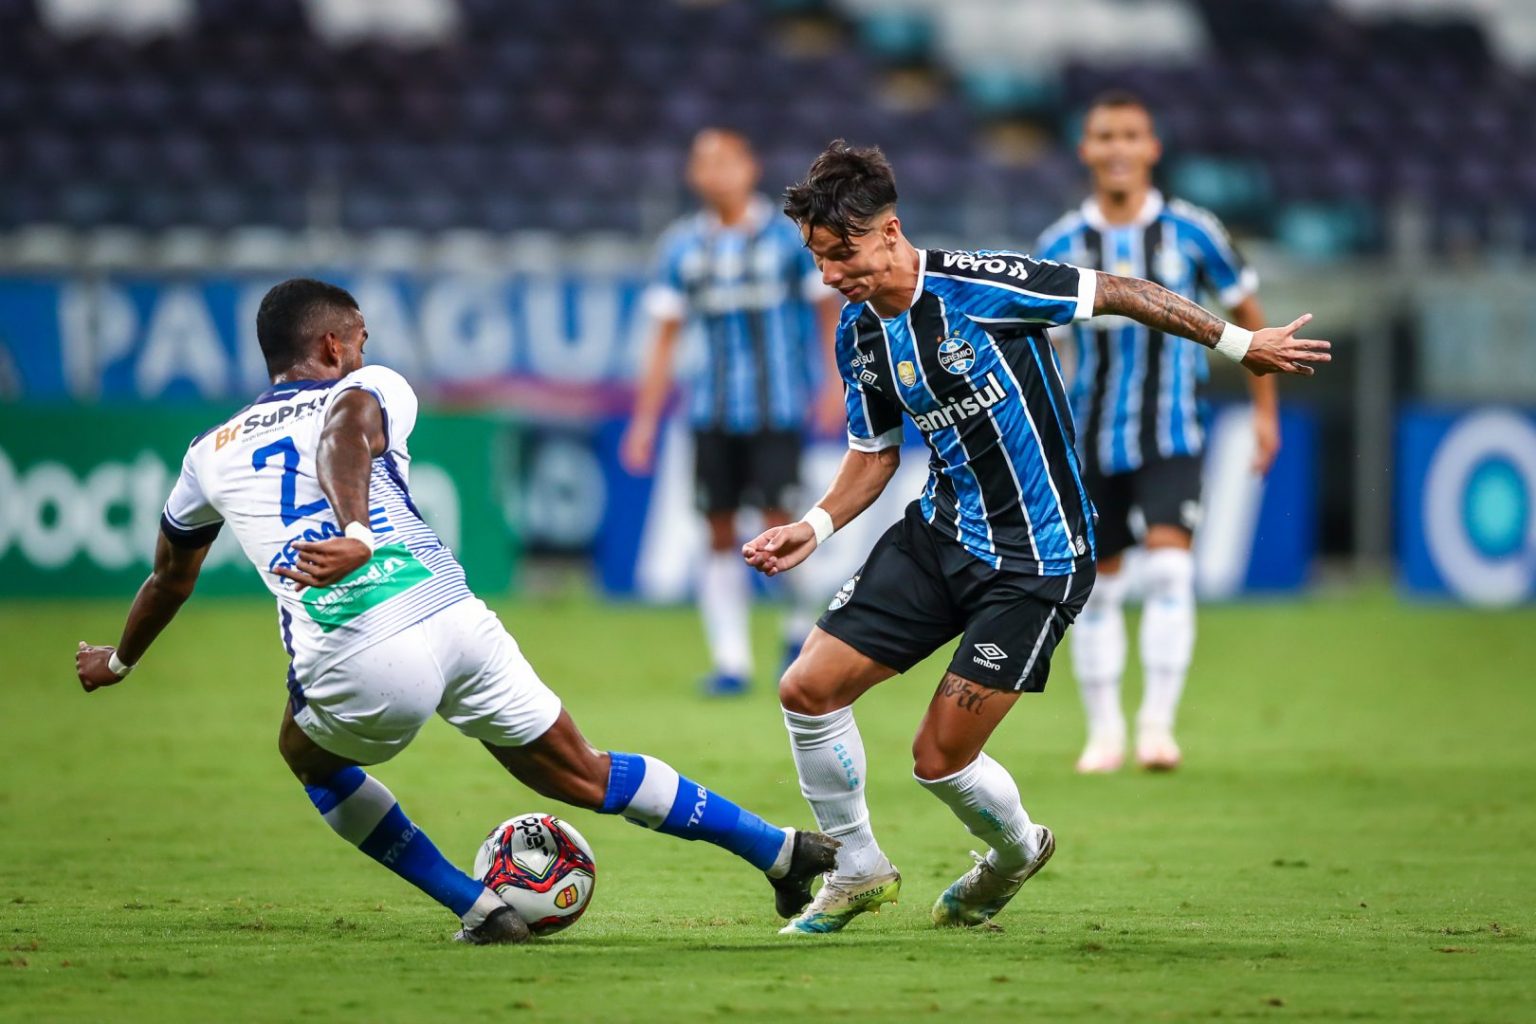 Grêmio vs ABC: A Battle Between Titans